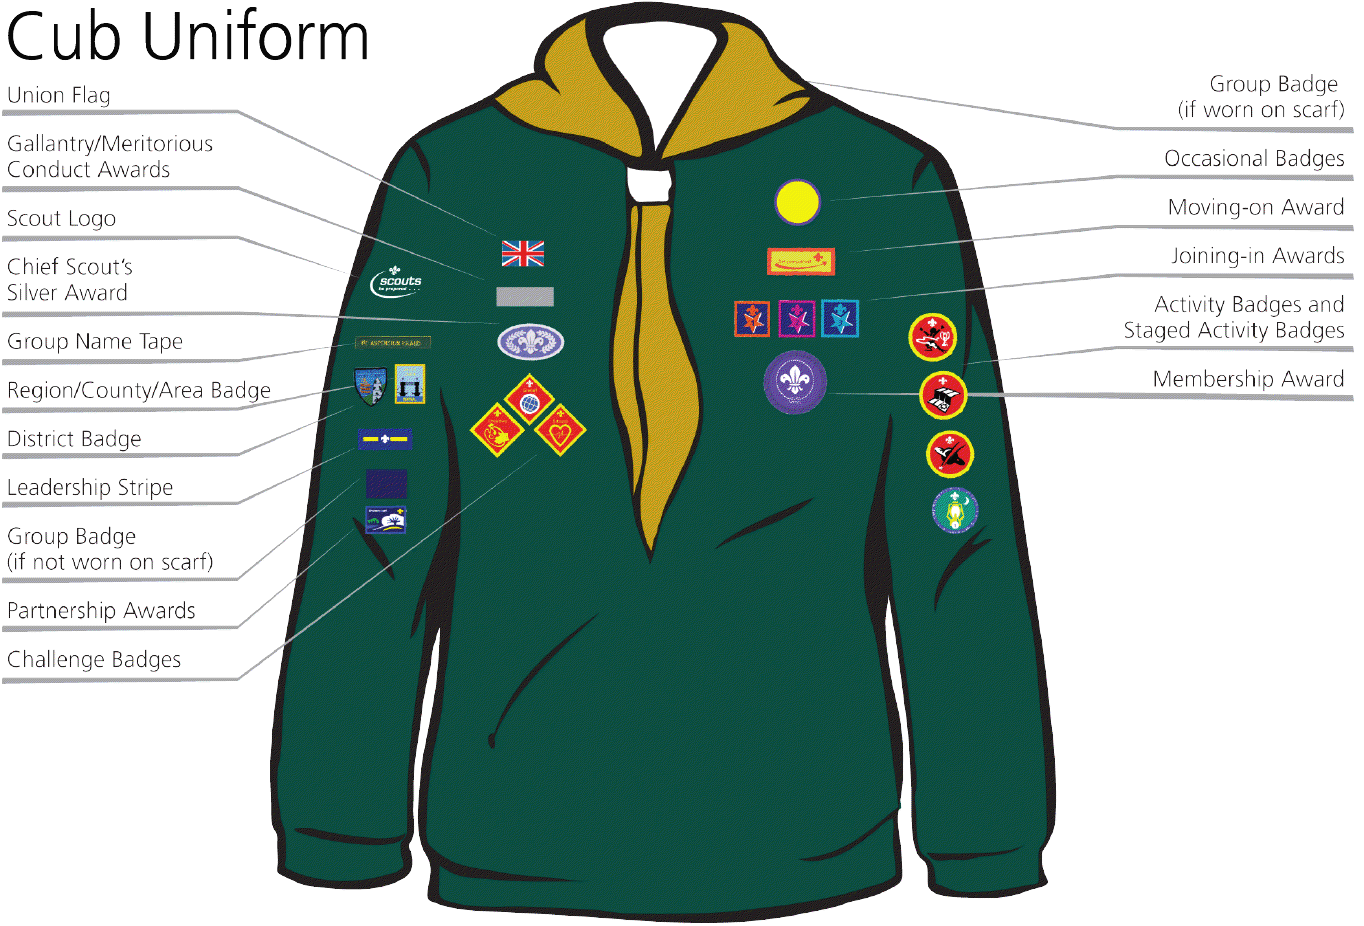 bkpam2145779_cub-uniform-badge-placementpng